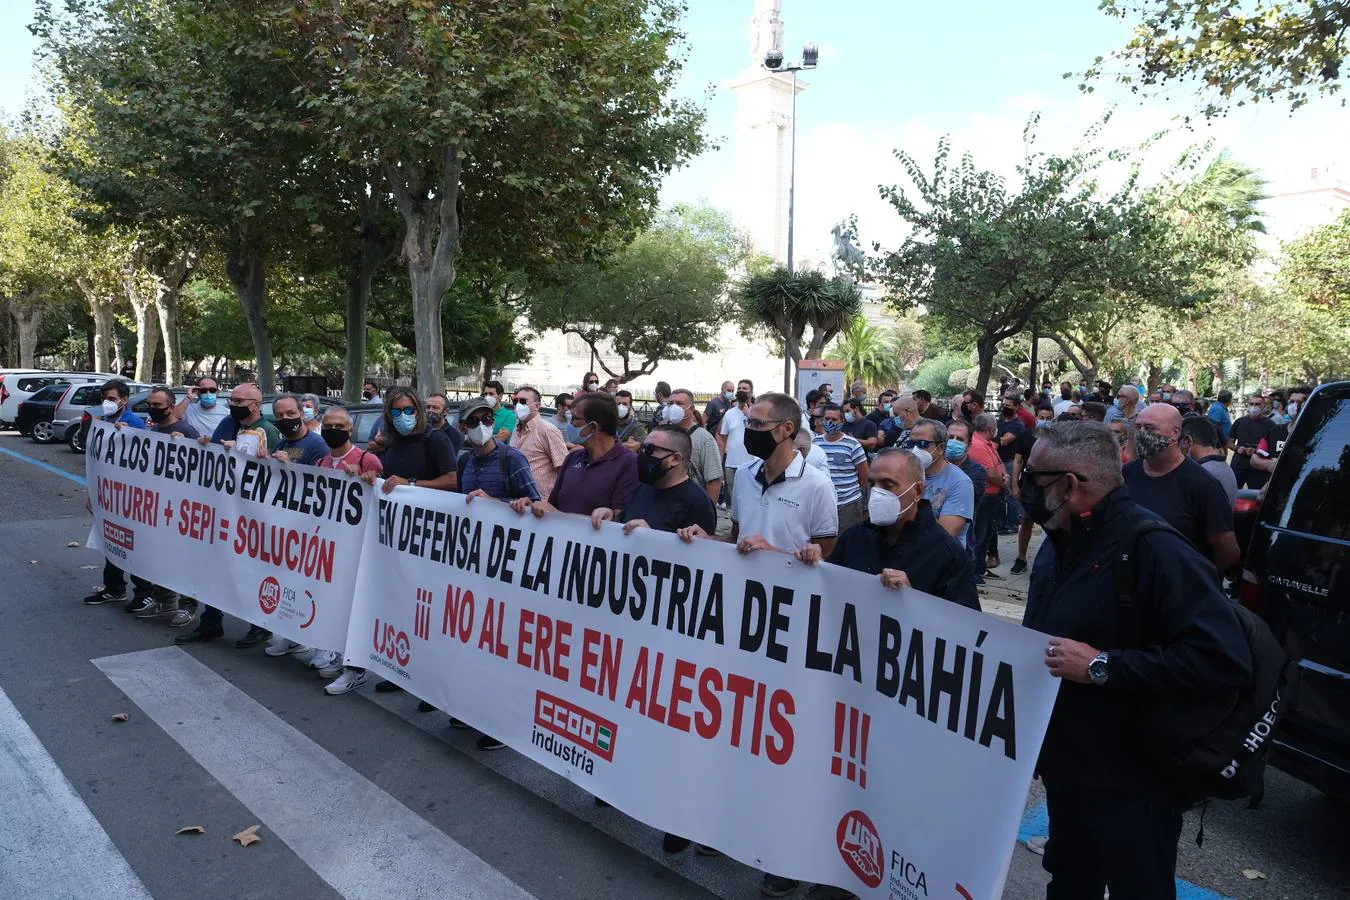 Concentración de Alestis en Cádiz